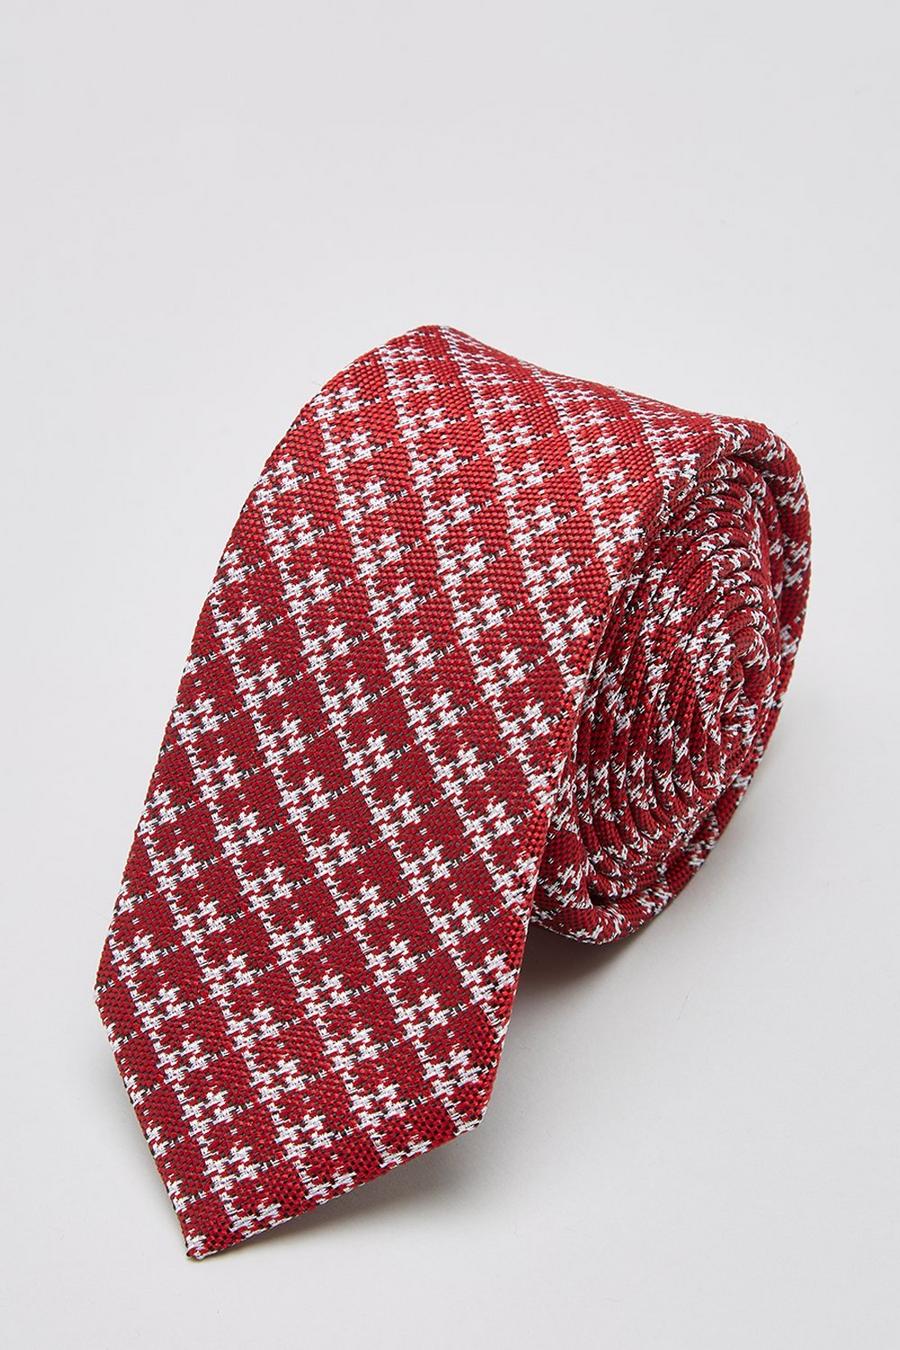 Ben Sherman Red Large Dogtooth Tie